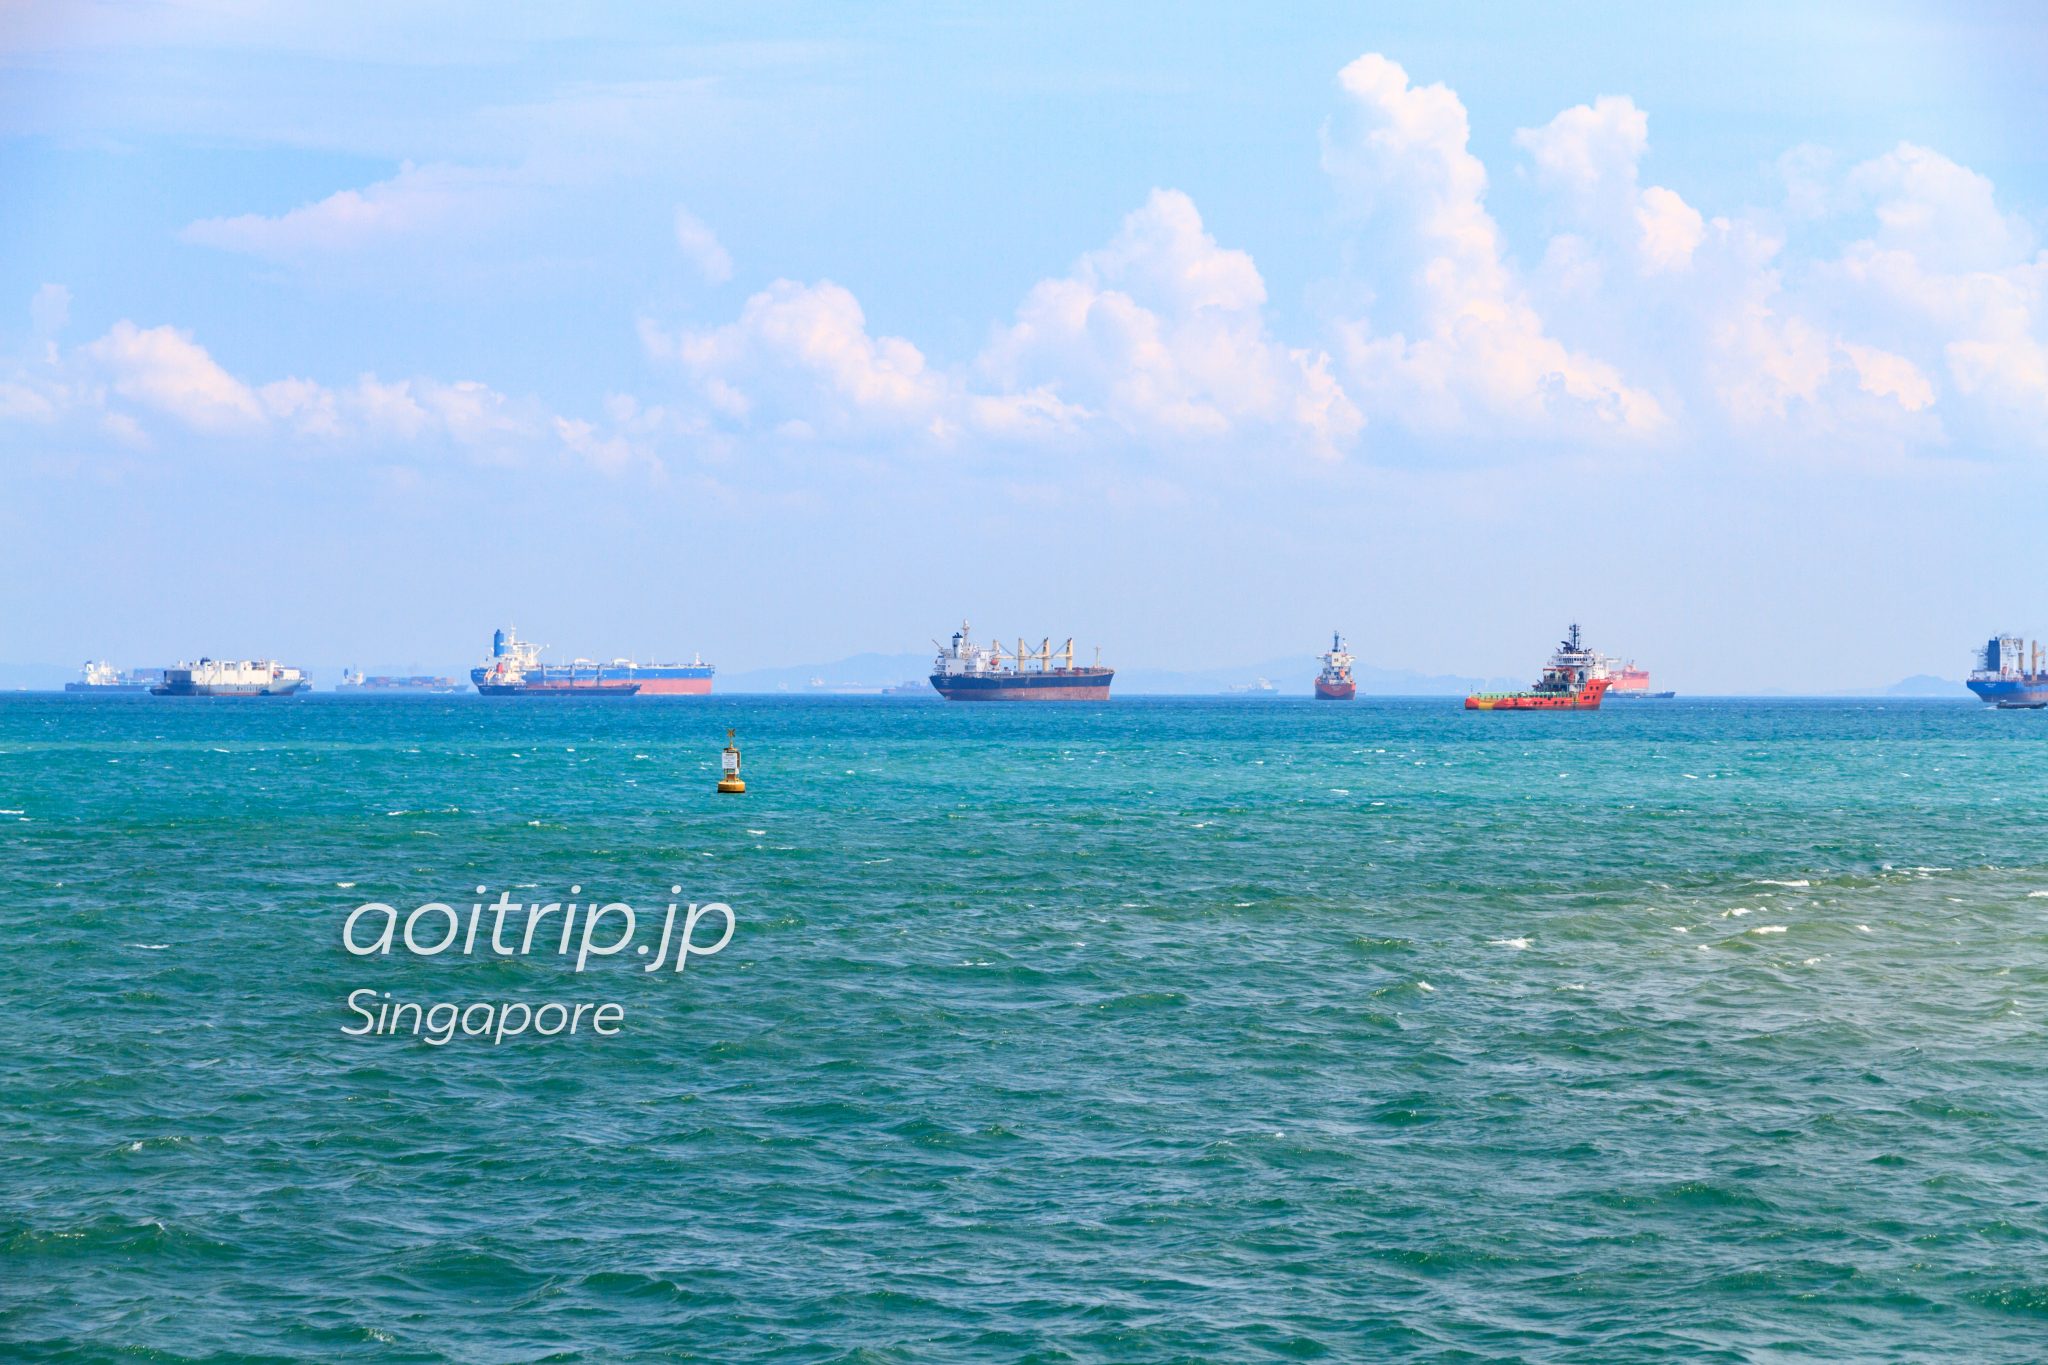 シンガポール海峡に浮かぶ無数のコンテナ船